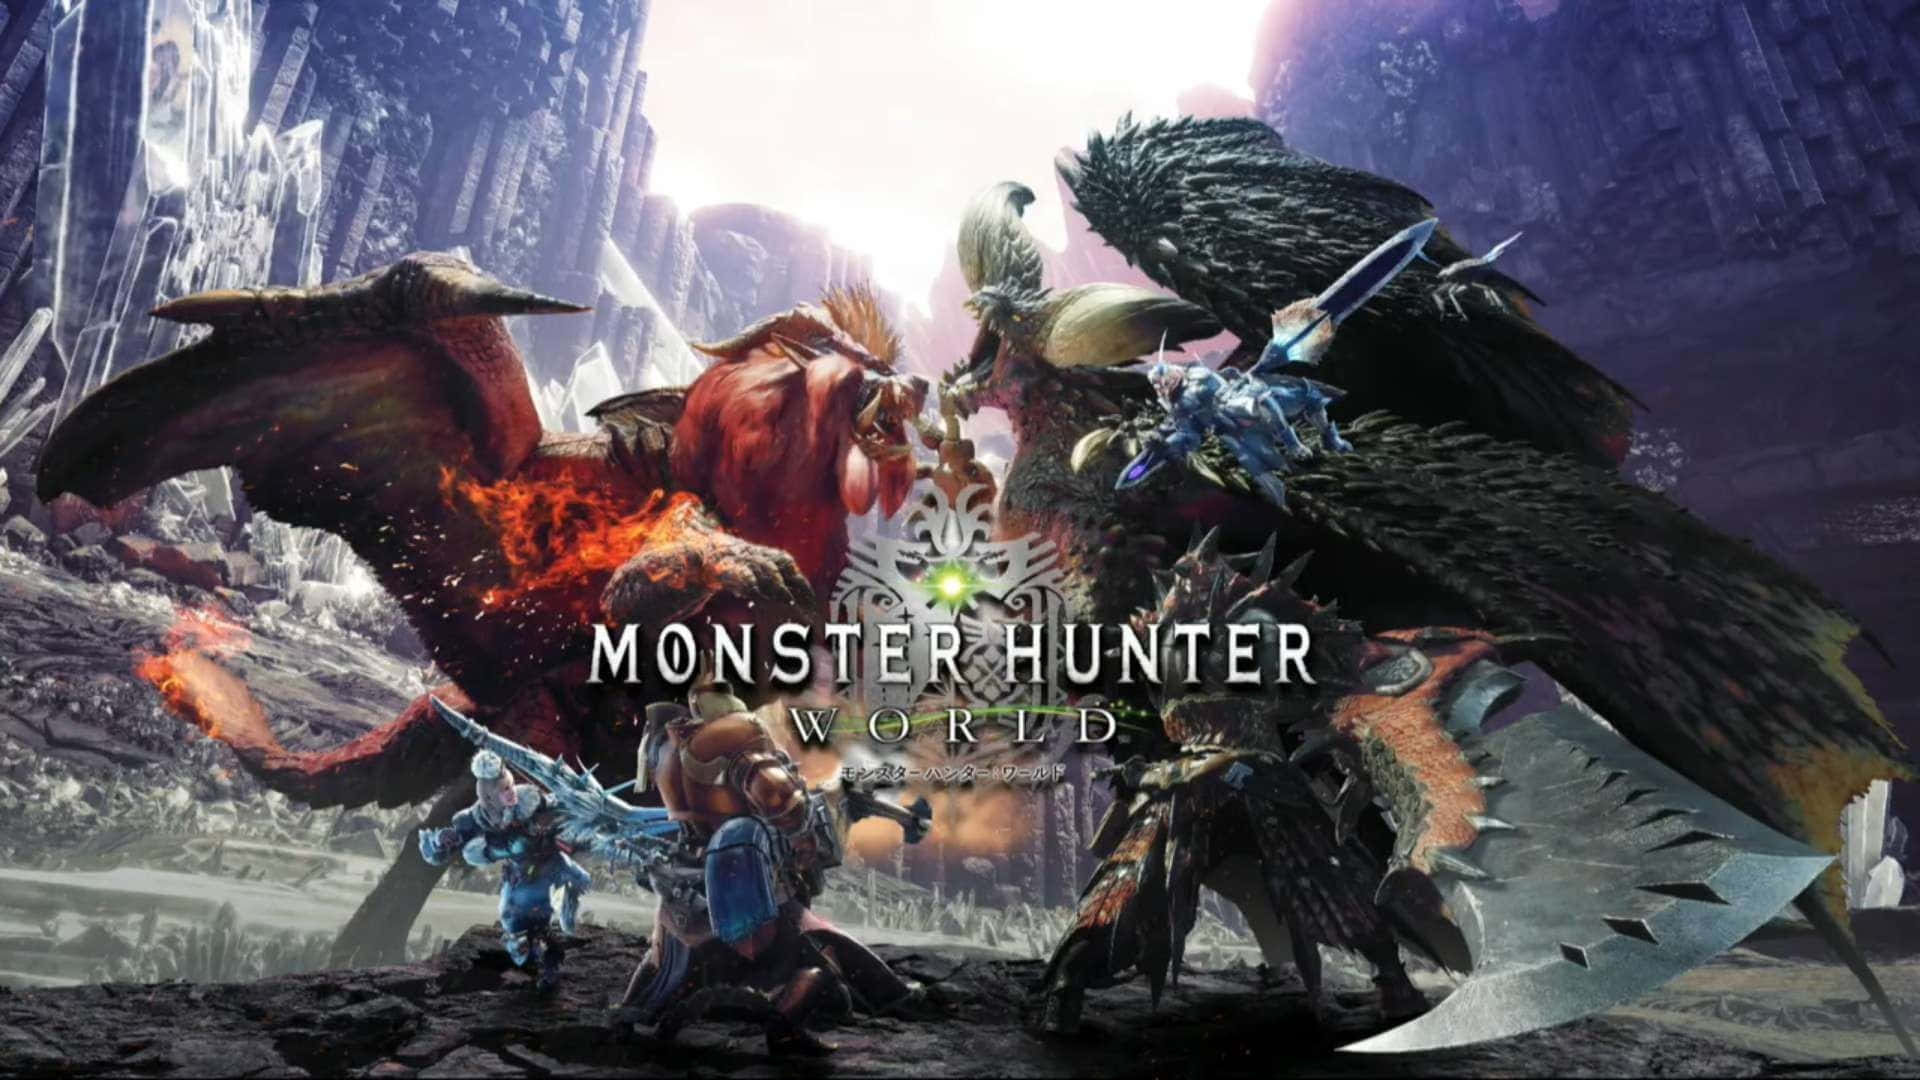 Hunting Monsters in Monster Hunter World